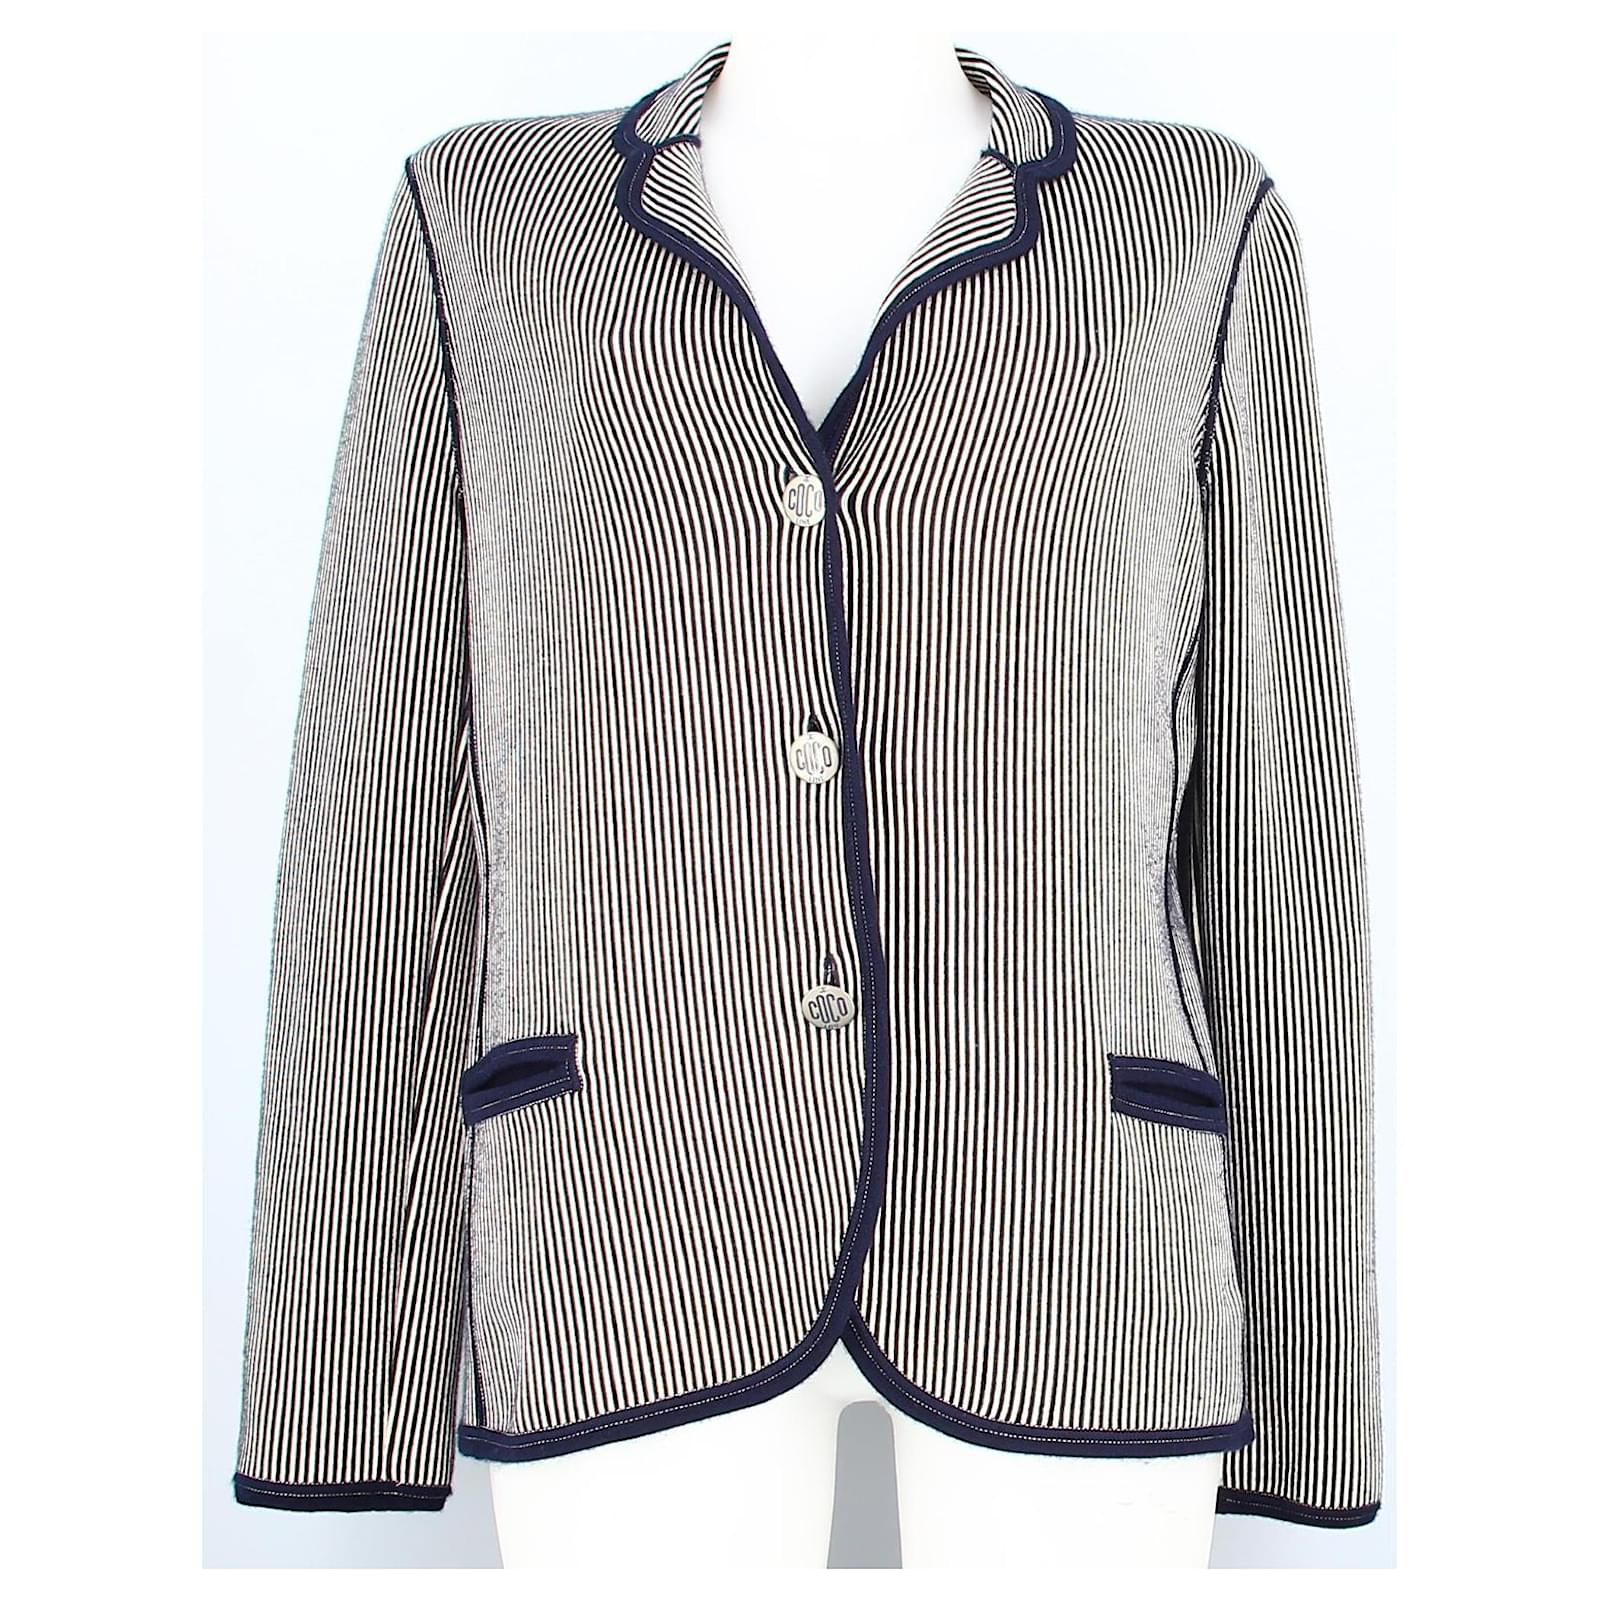 Blue striped men jacket in size 40